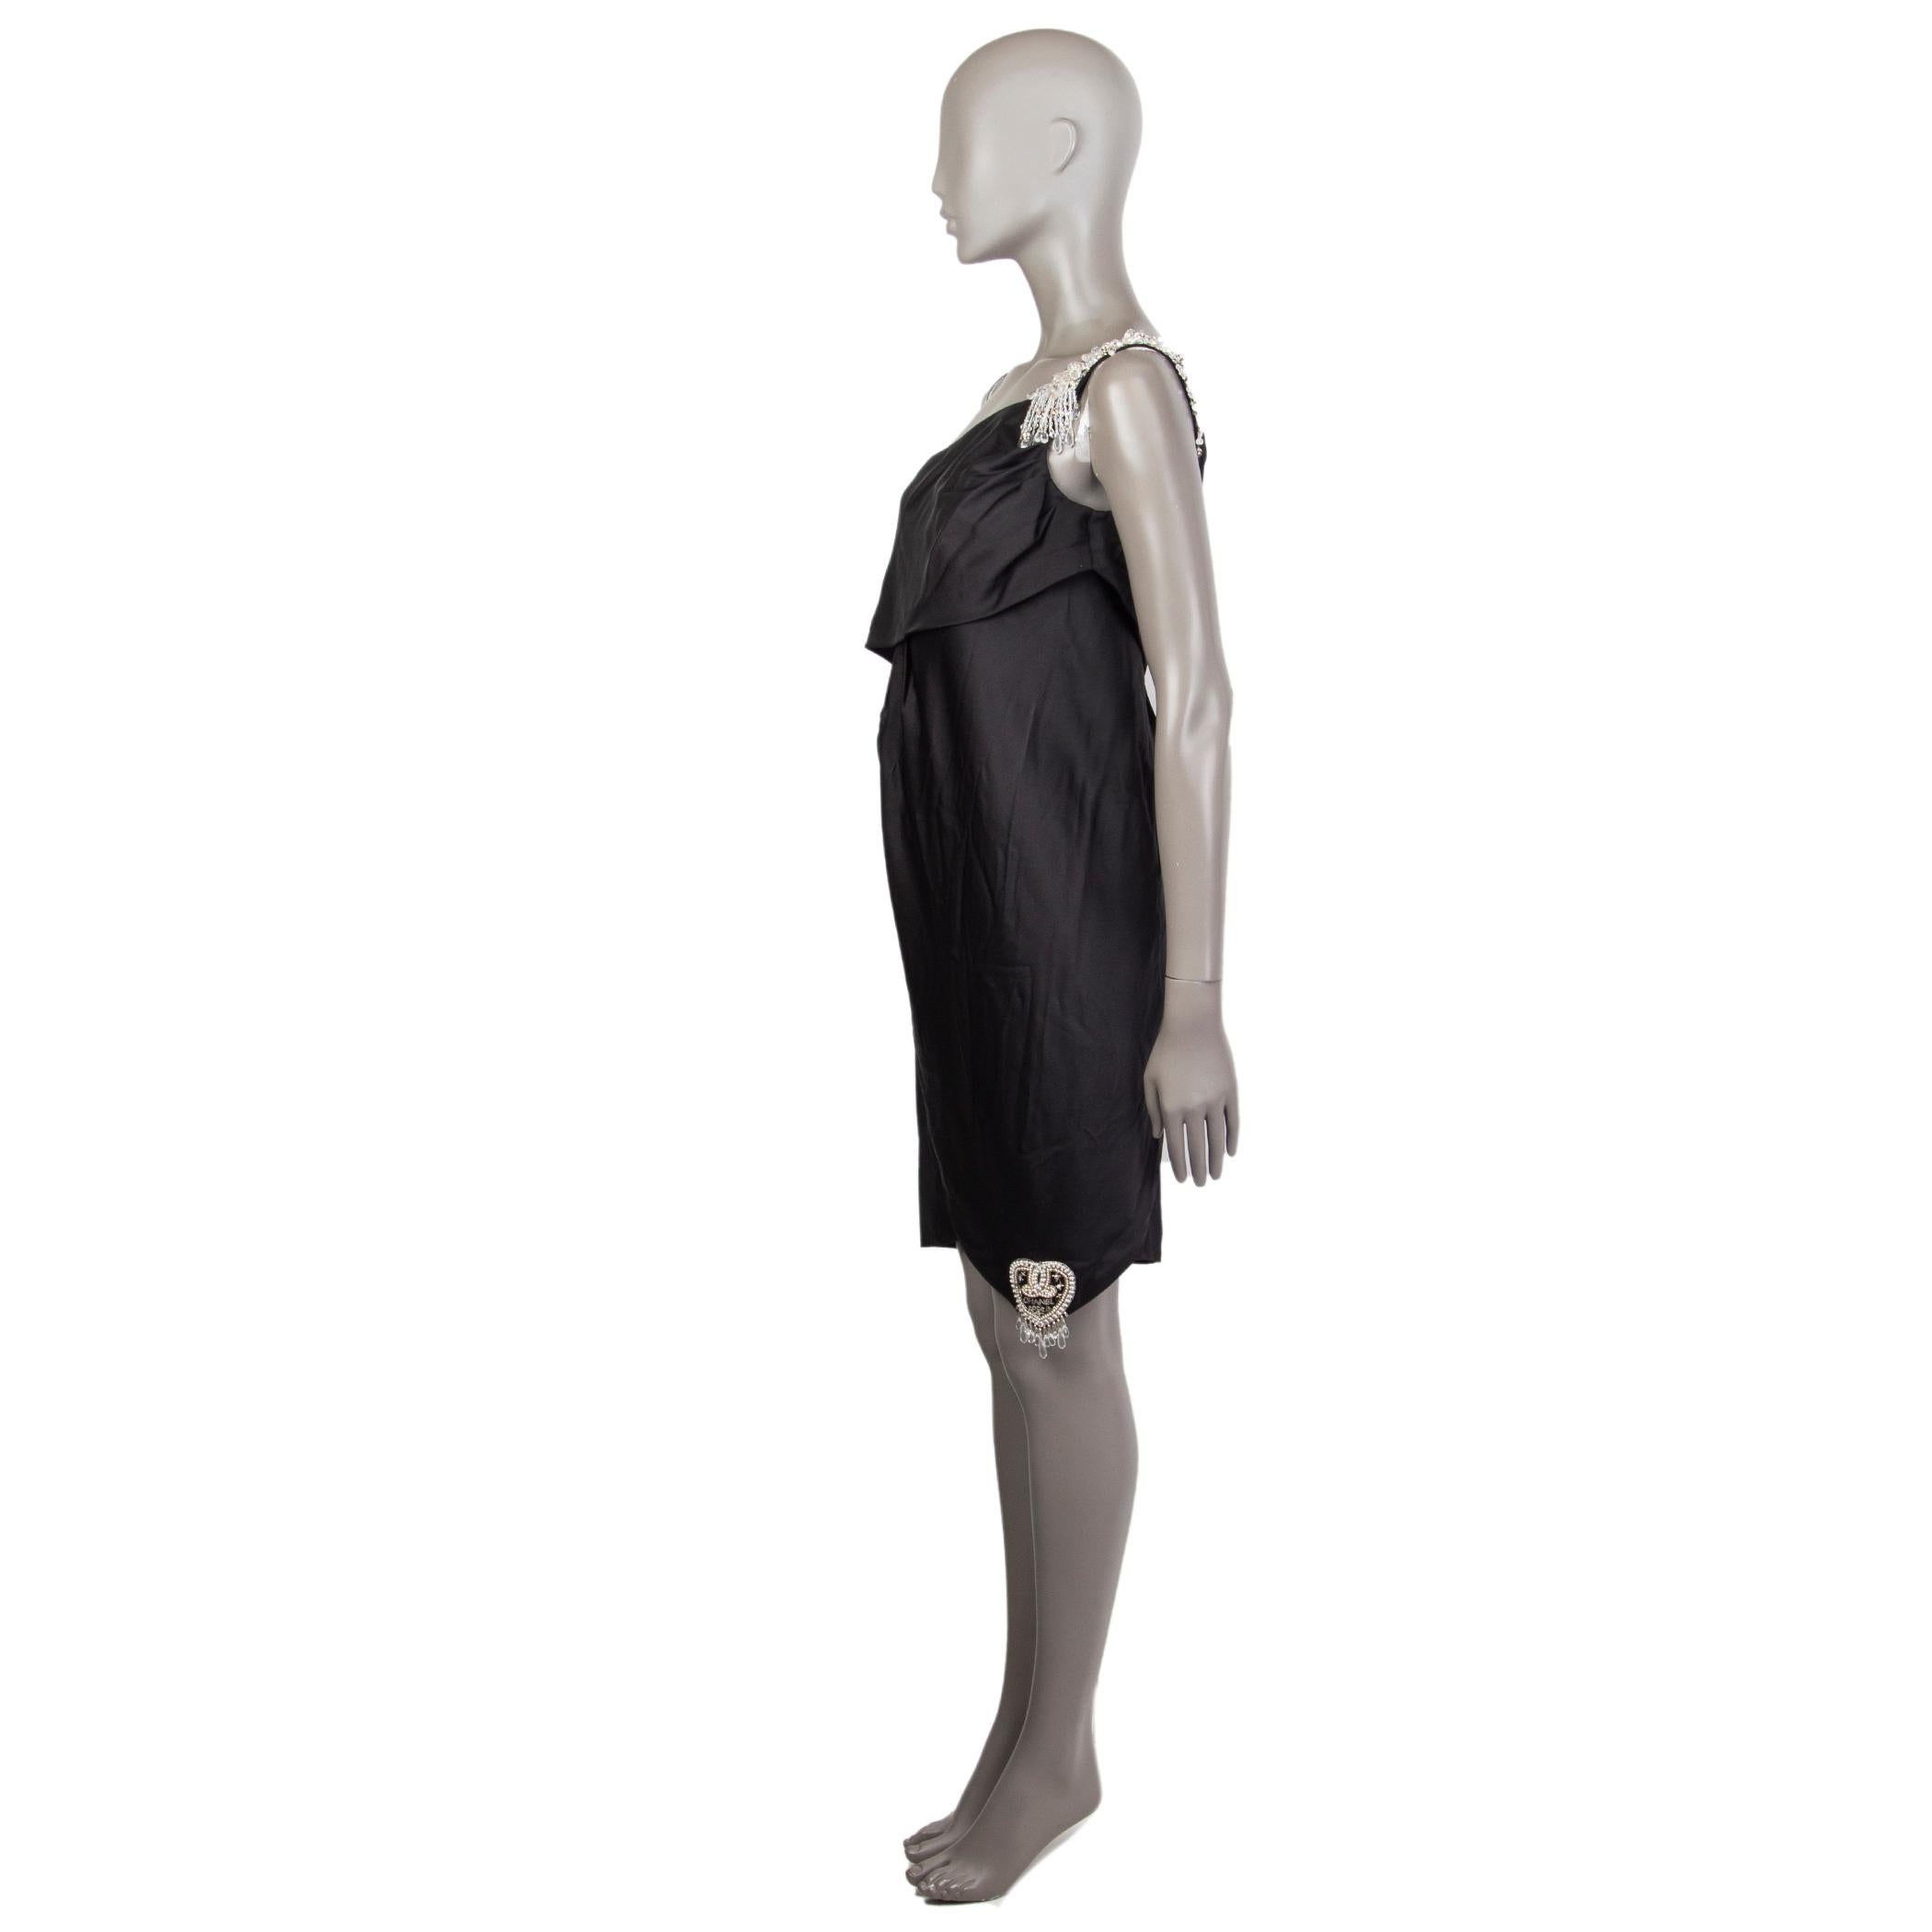 Mini robe Chanel embellie à une épaule en soie noire (100%) avec un détail d'application de perles Chanel 2008 sur le coin inférieur droit. Se ferme sur le côté avec une fermeture éclair dissimulée et six perles gravées cc en forme de diamant clair.